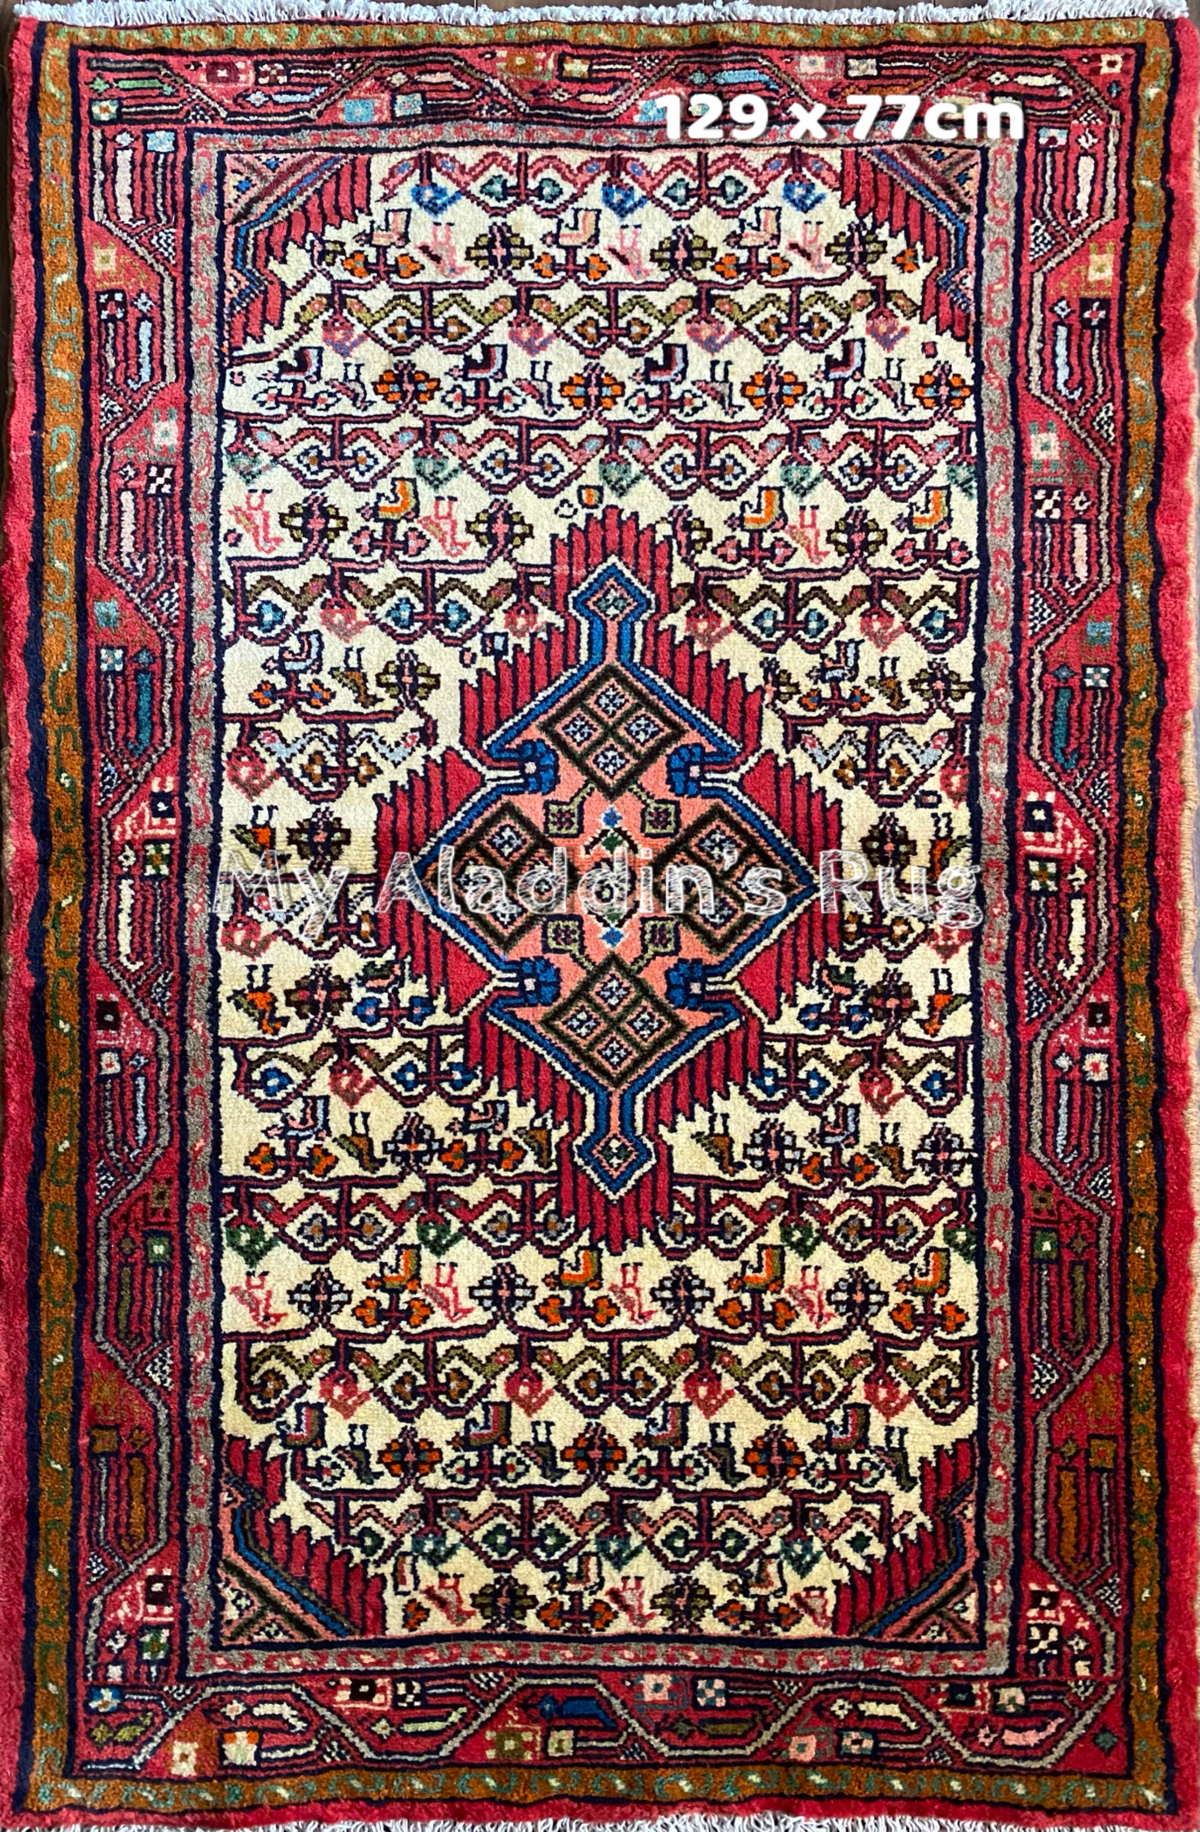 ザゲ産 ペルシャ絨毯 129×77cm– MARC My Aladdin's Rug & Carpet